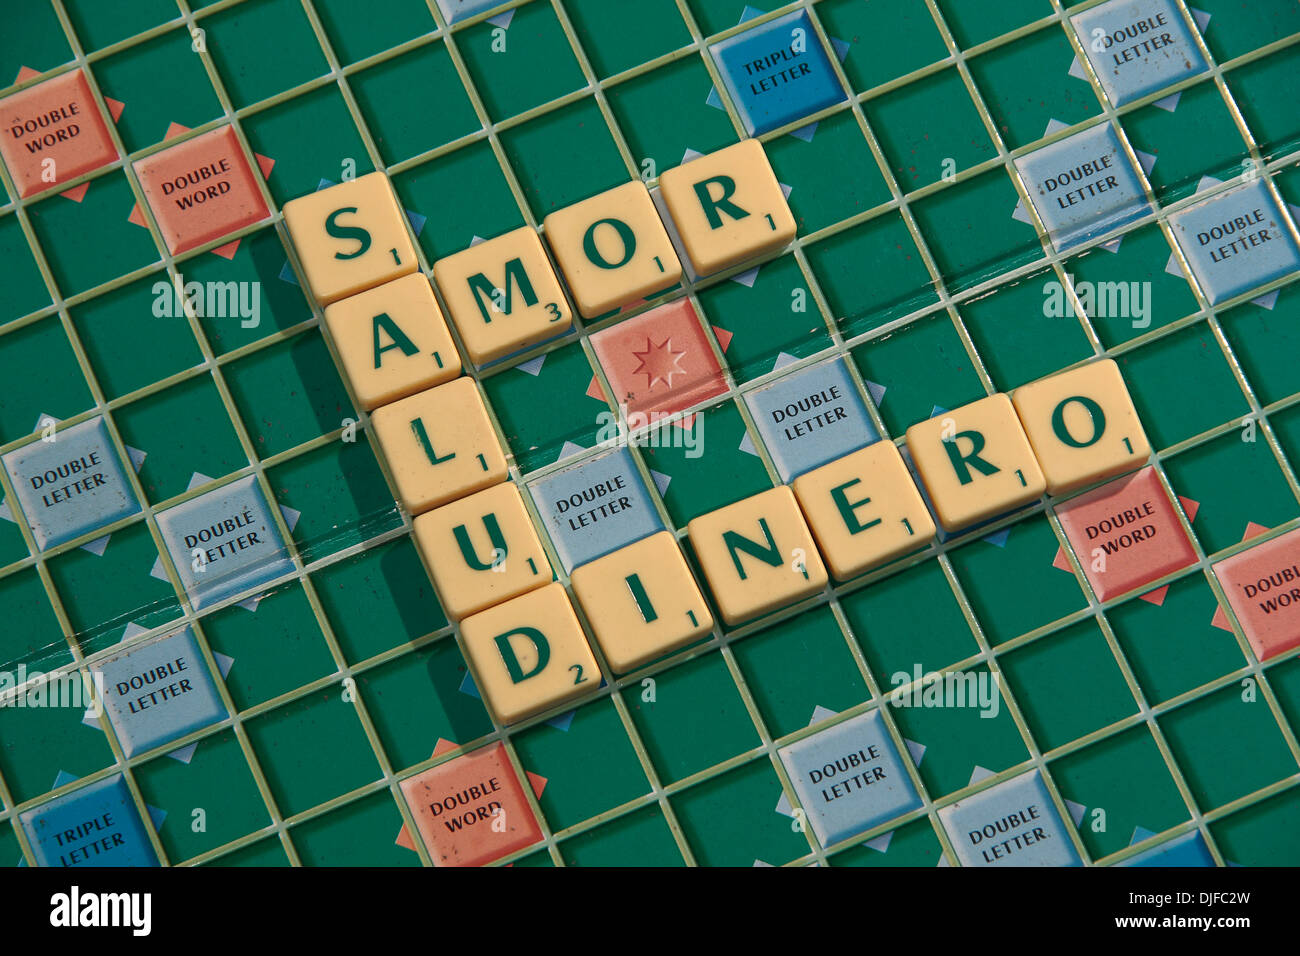 Die spanische Phrase, "Salud Amor y Dinero" (Gesundheit, Liebe und Geld) in Scrabble Fliesen auf einem Scrabble-Brett geschrieben. Stockfoto